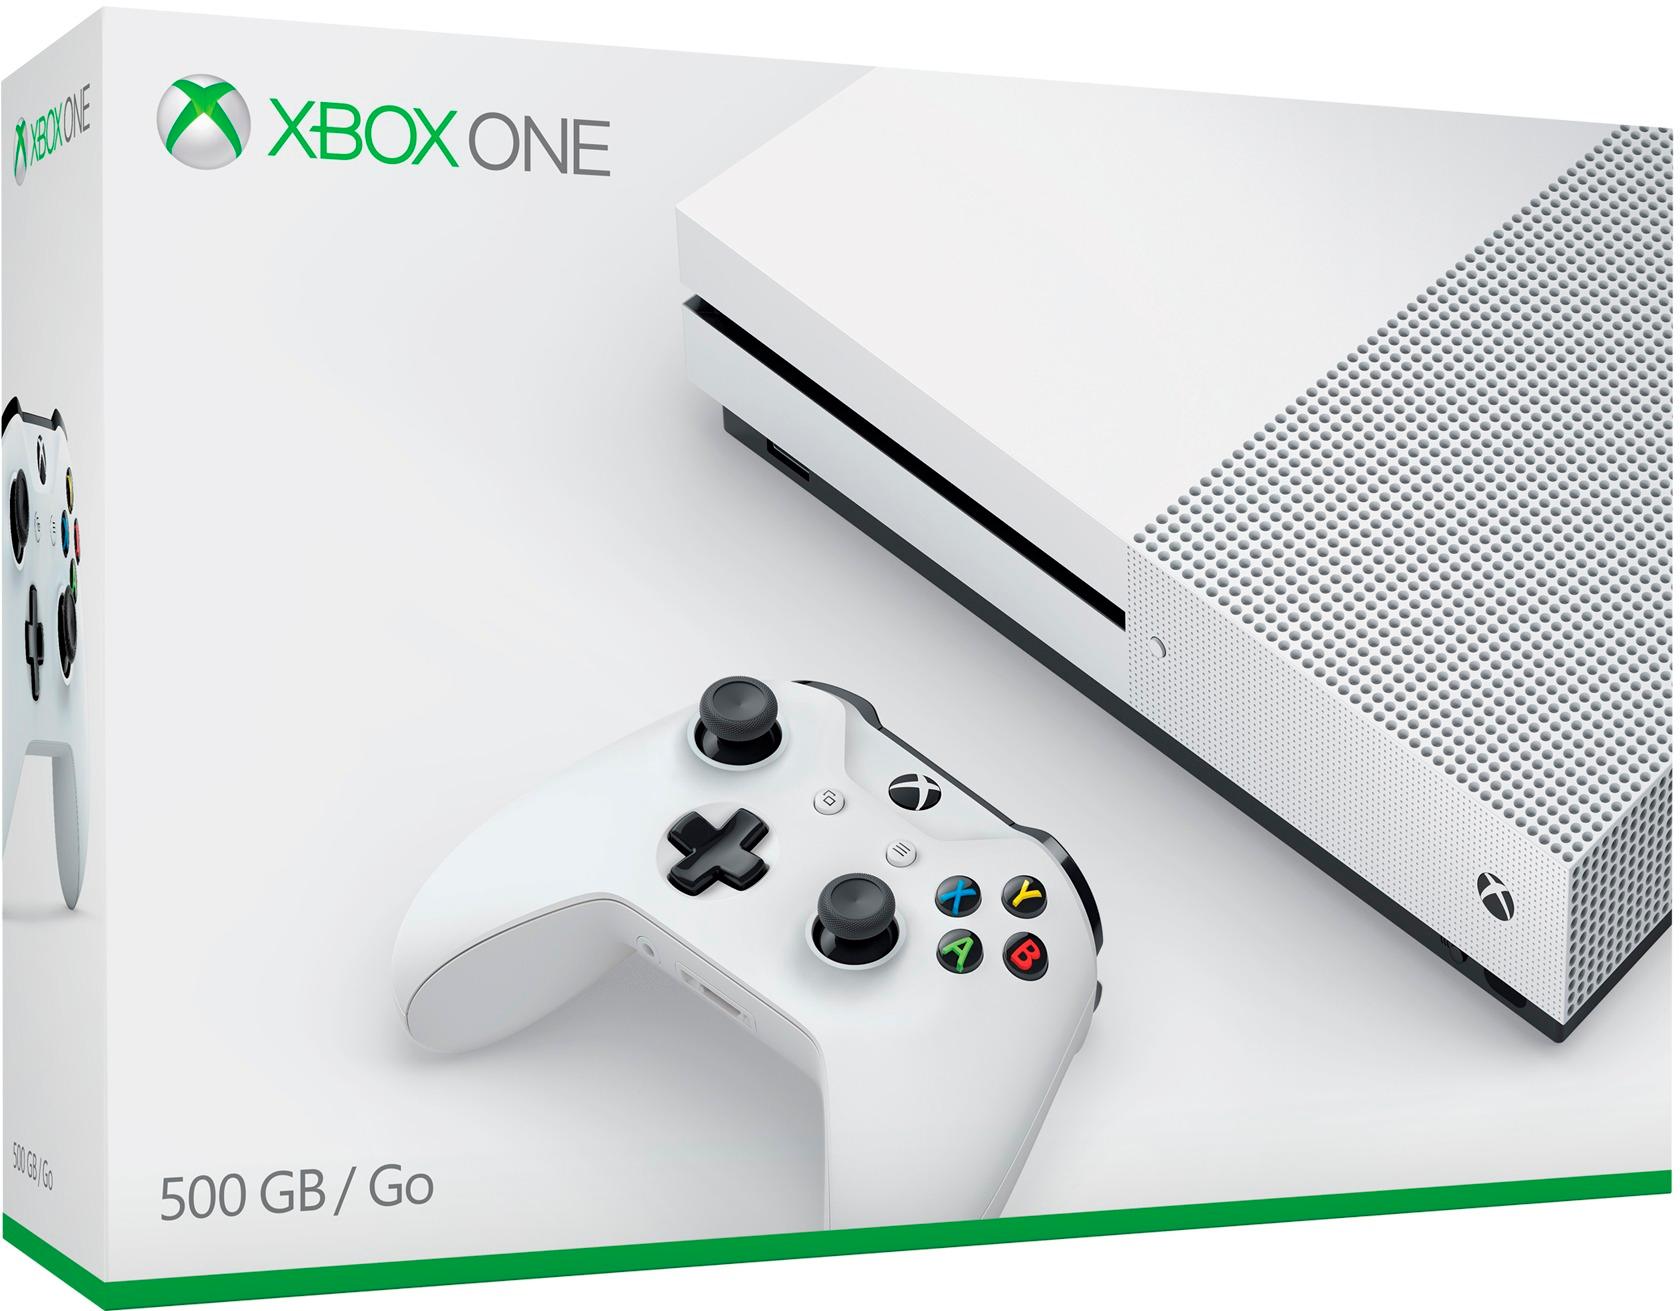 Medaille Hoofdkwartier technisch Best Buy: Microsoft Xbox One S 500GB Console White ZQ9-00001